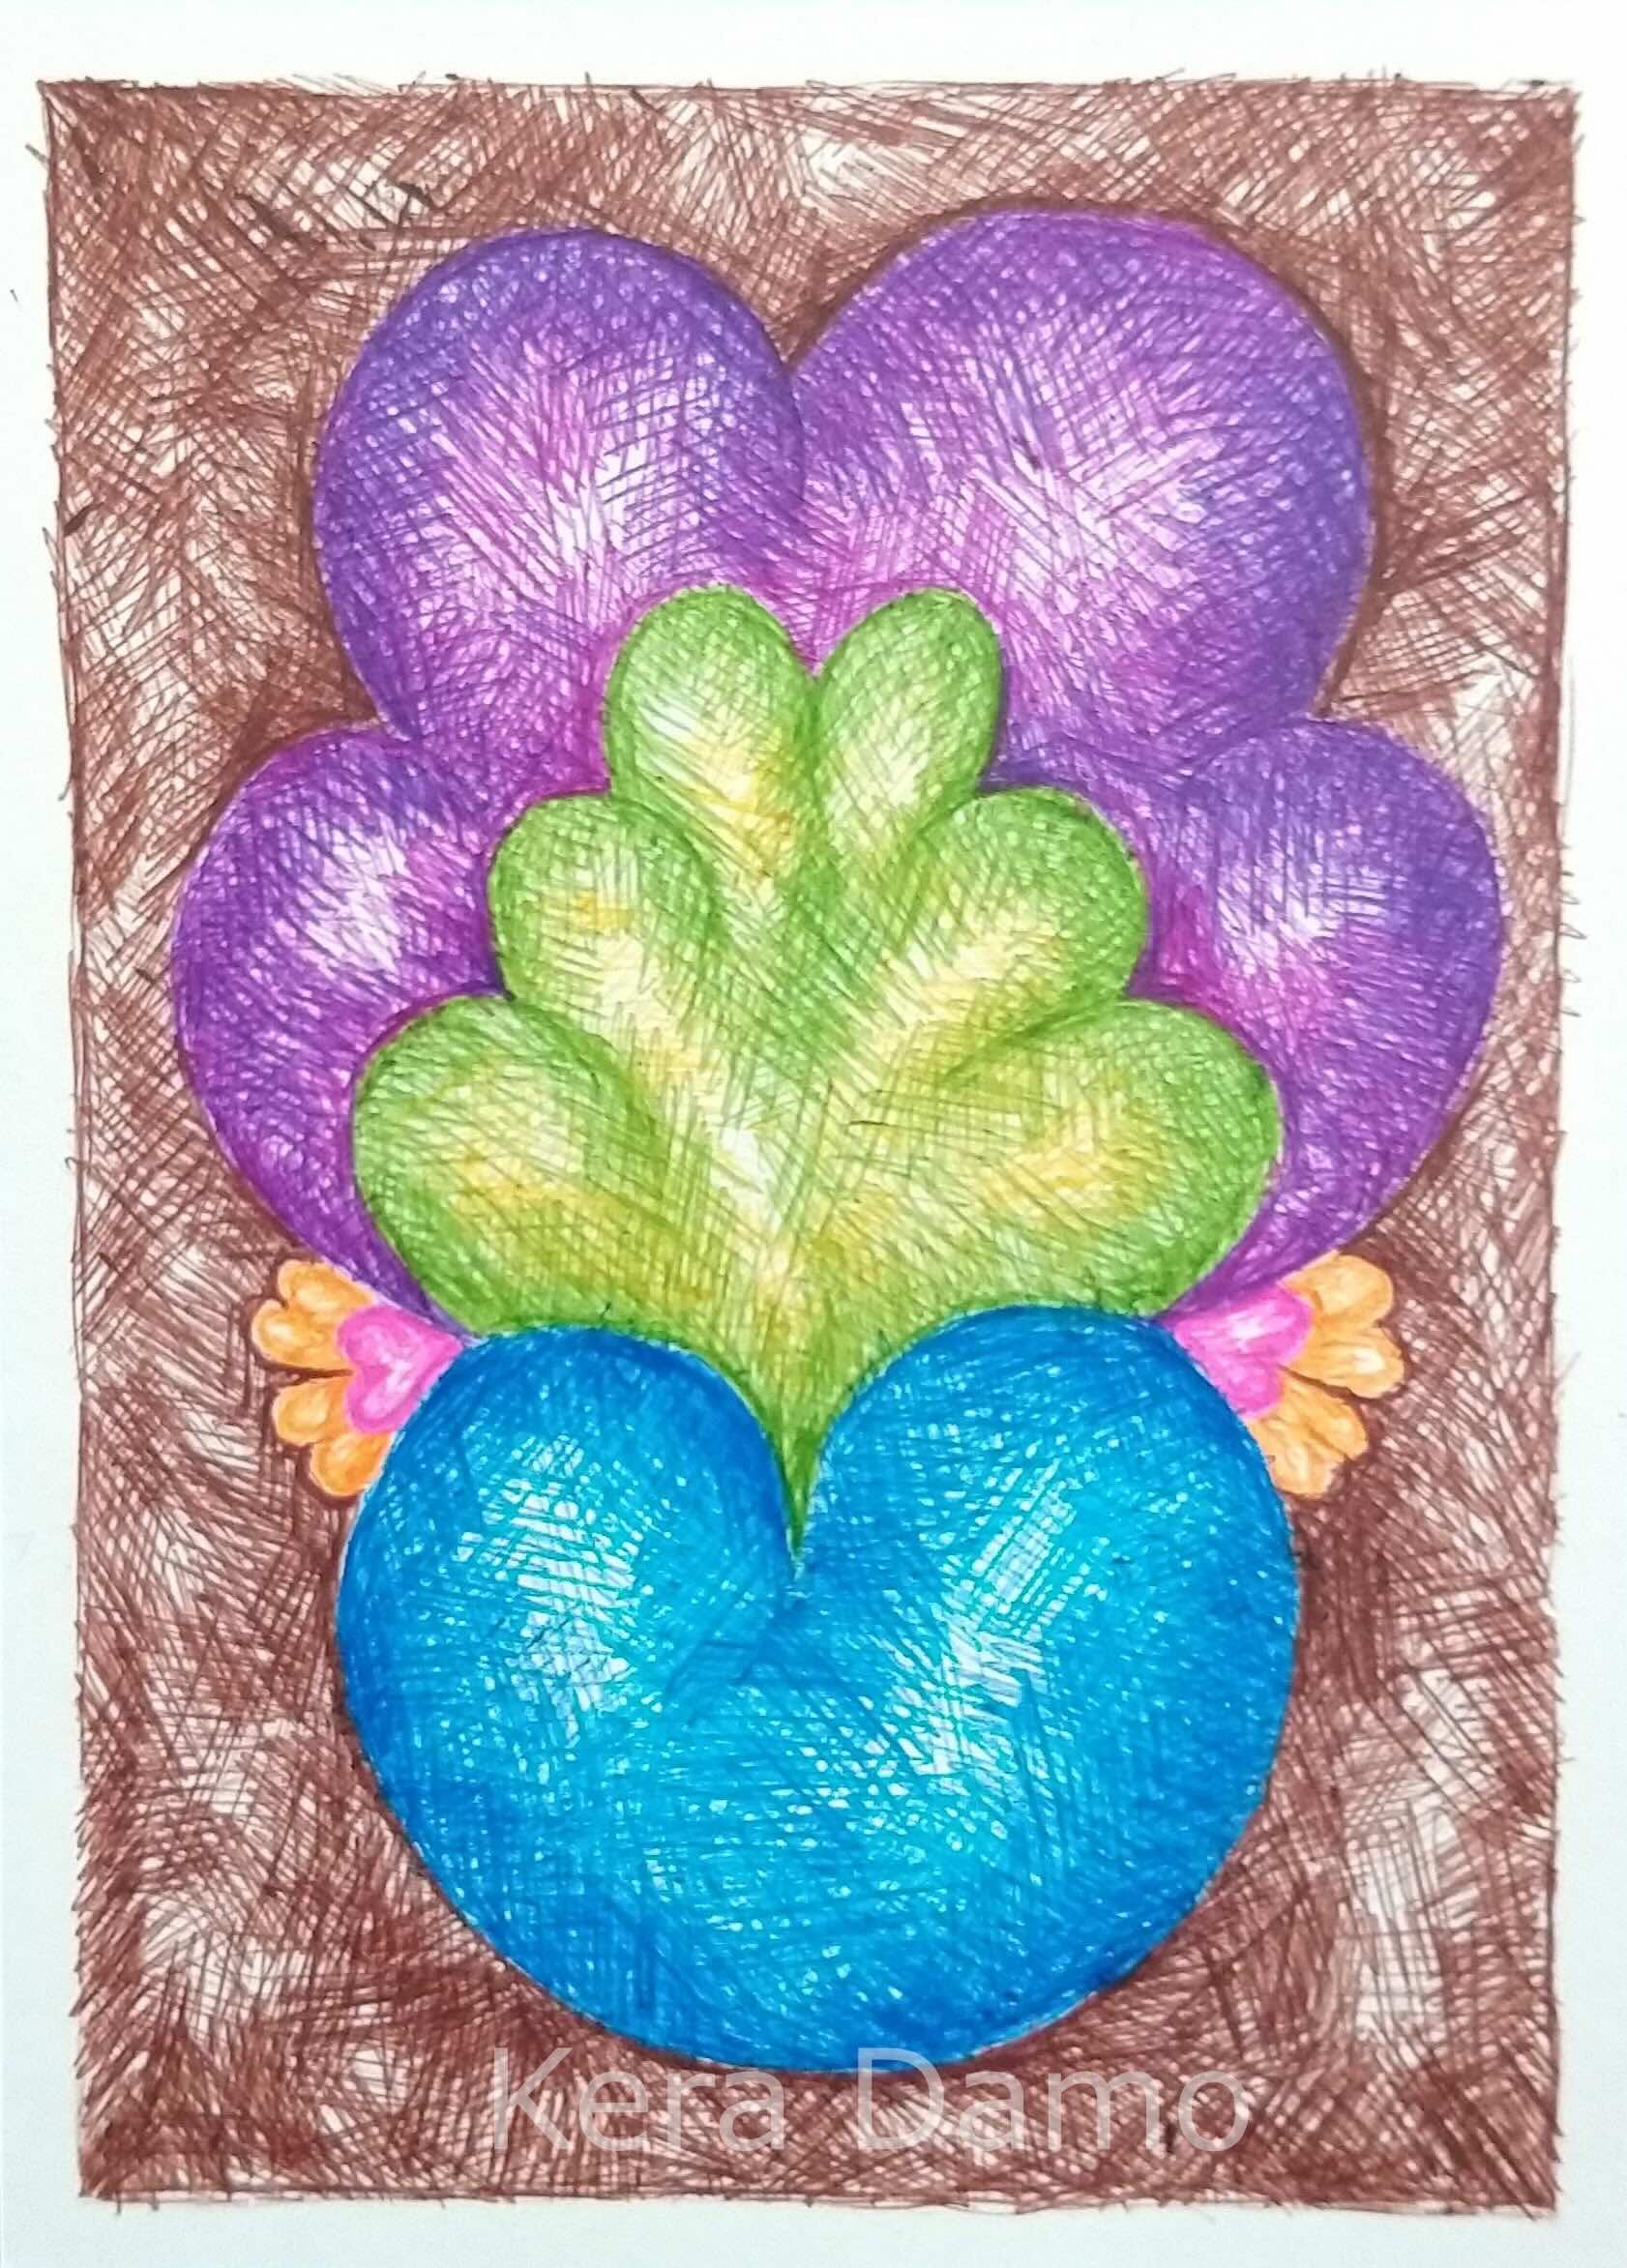 A multicoloured pen drawing made by visual artist Kera Damo from the Hague / Een meerkleurige pentekening van beeldend kunstenaar Kera Damo uit Den Haag